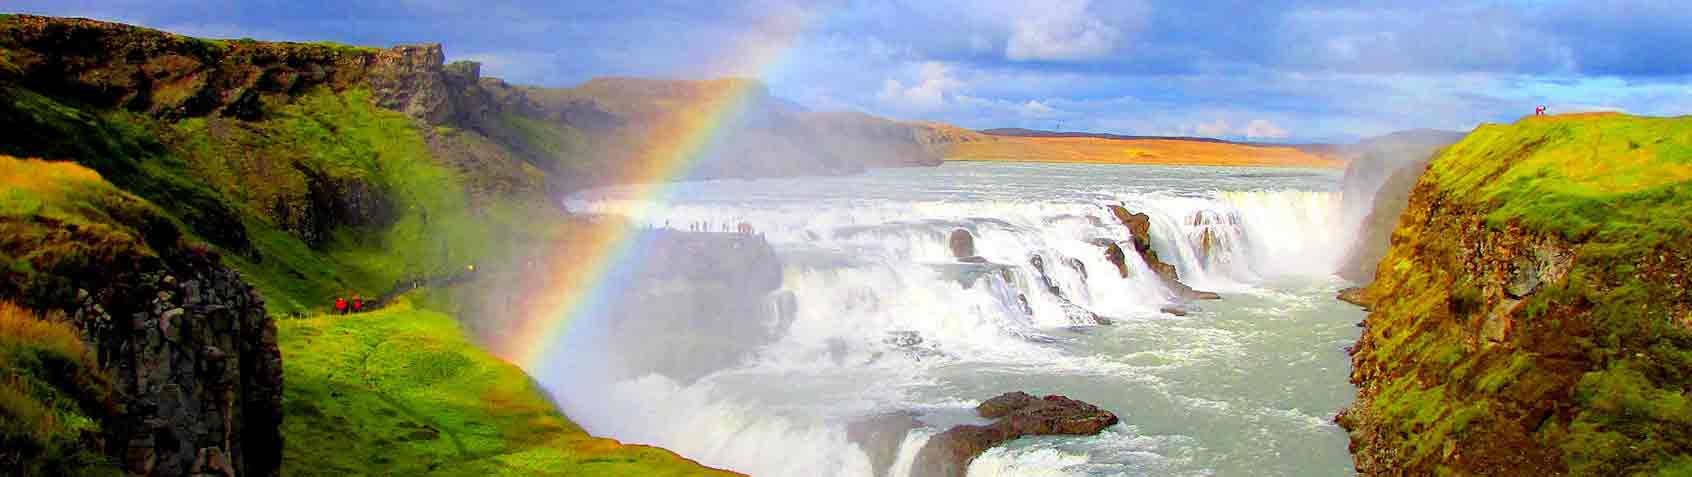 Les merveilles de l'Islande